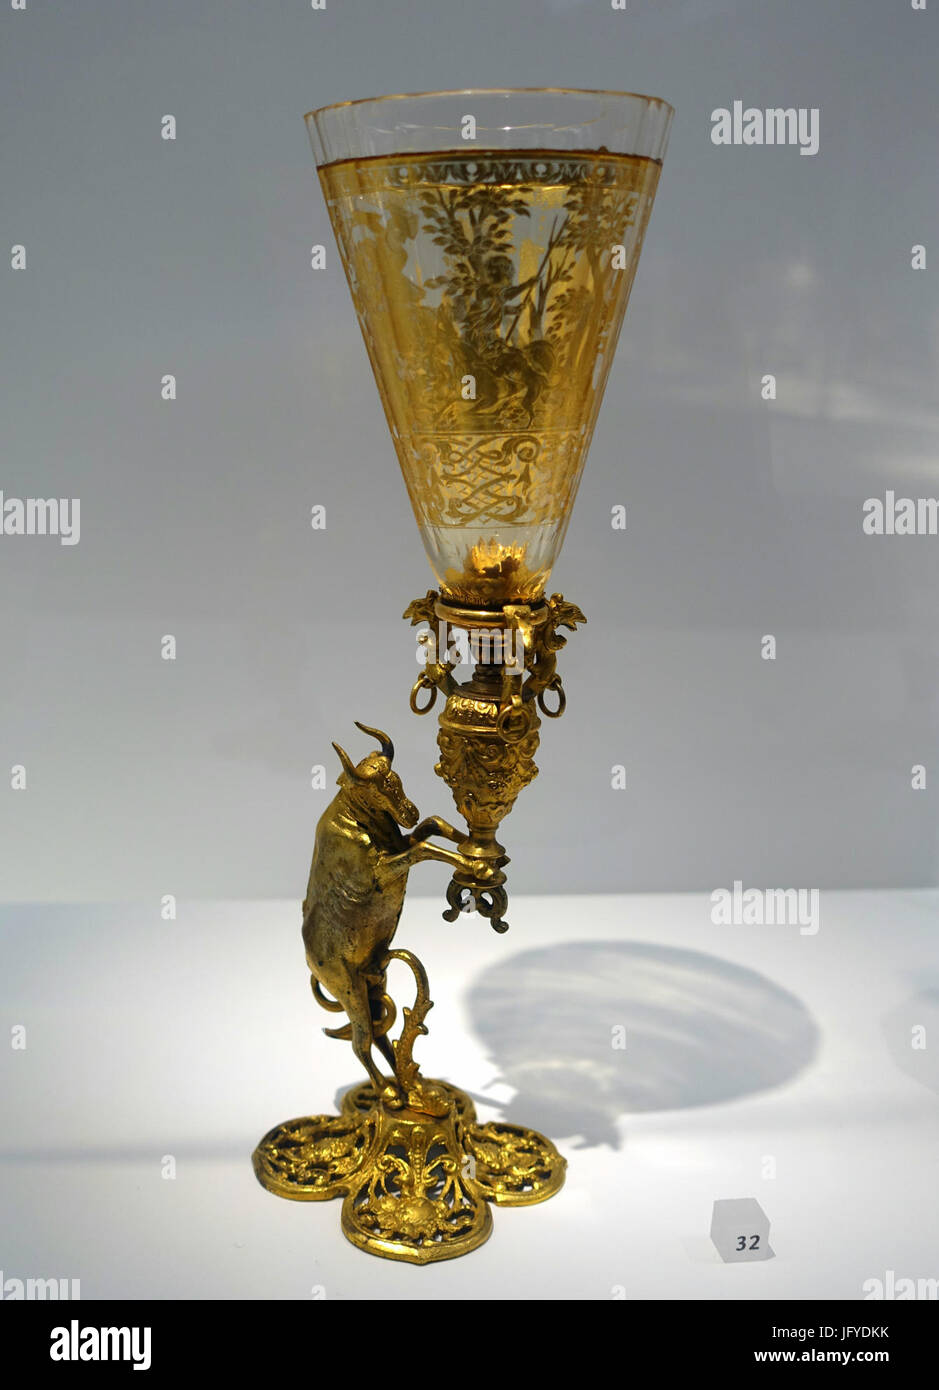 Pokal mit Jagdszene, vergoldete 1725-1750 n. Chr., mit Ochsen Griff, 17. oder 19. Jahrhundert, Bohemia, Glas mit Golddekor, Bronze - Landesmuseum Württemberg - Stuttgart, Deutschland - DSC03373 Stockfoto